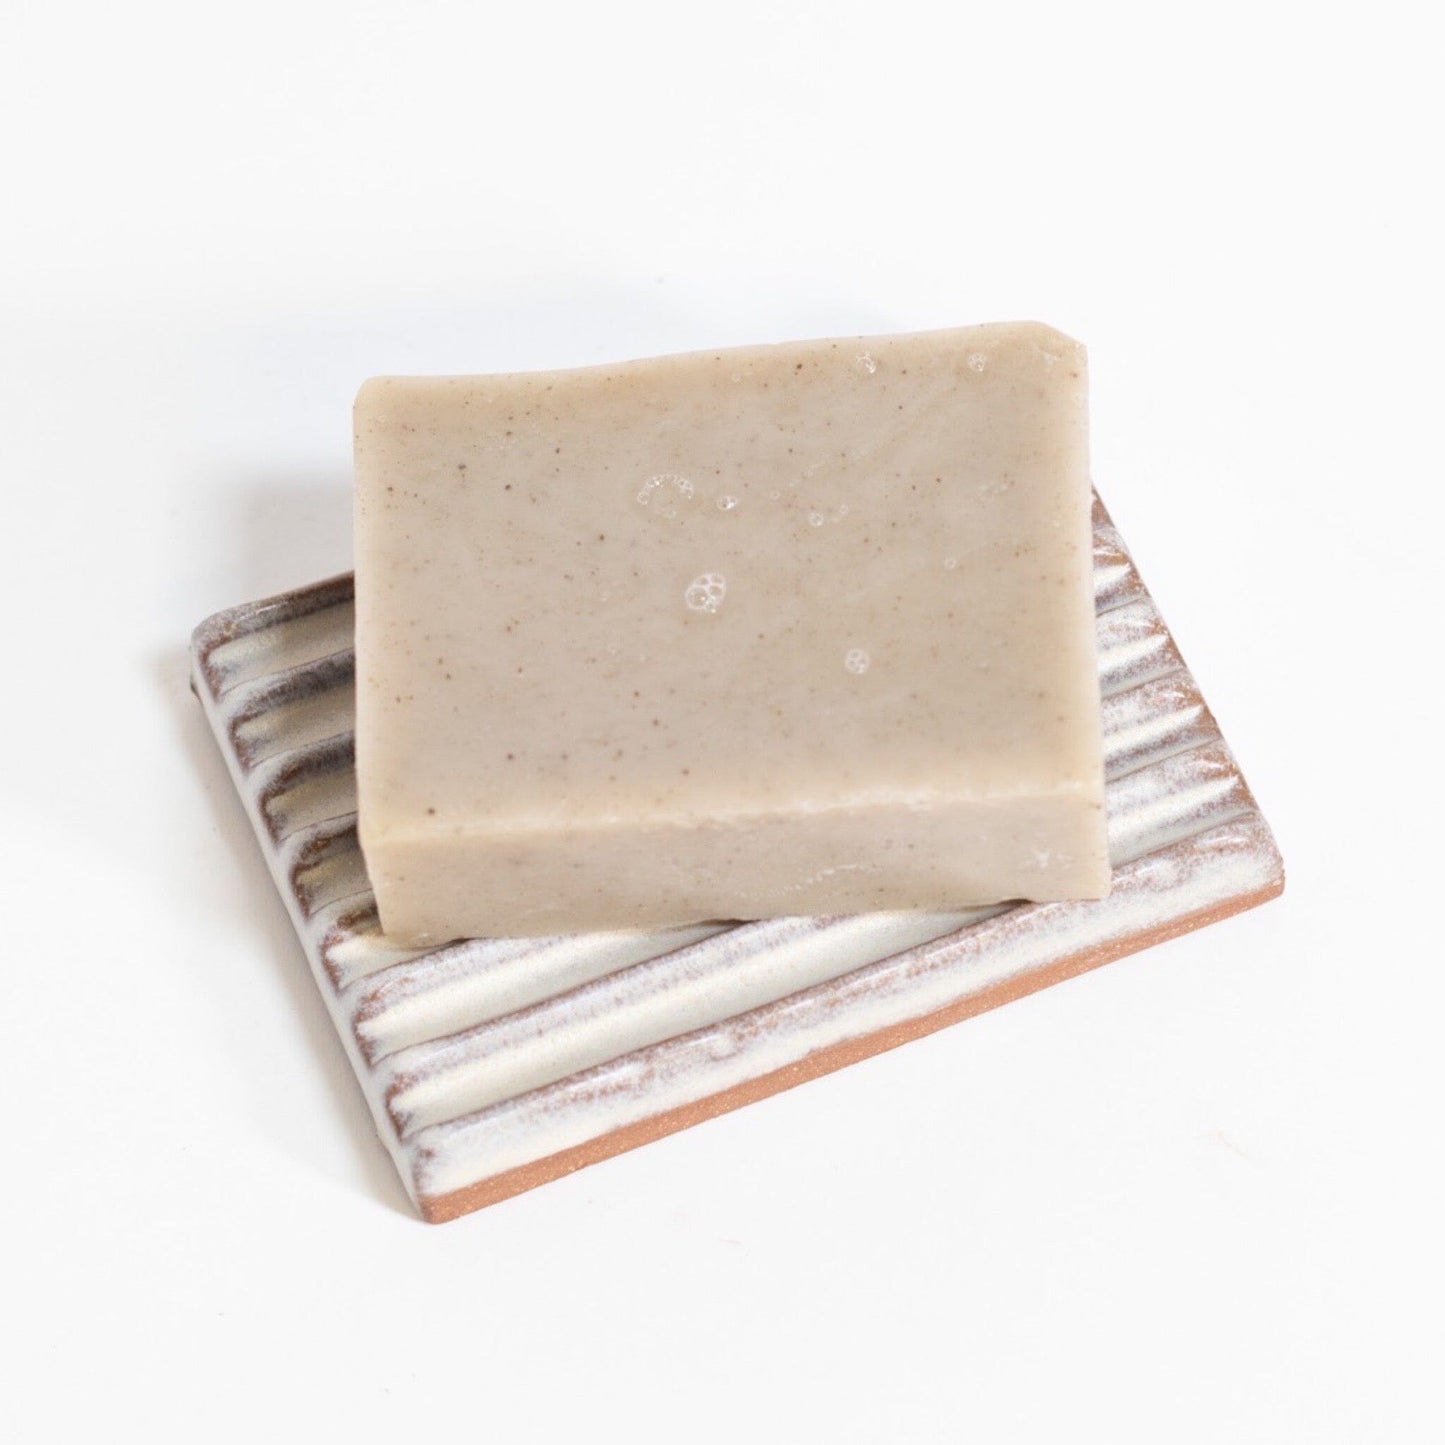 Ceramic Soap Dish - Cream